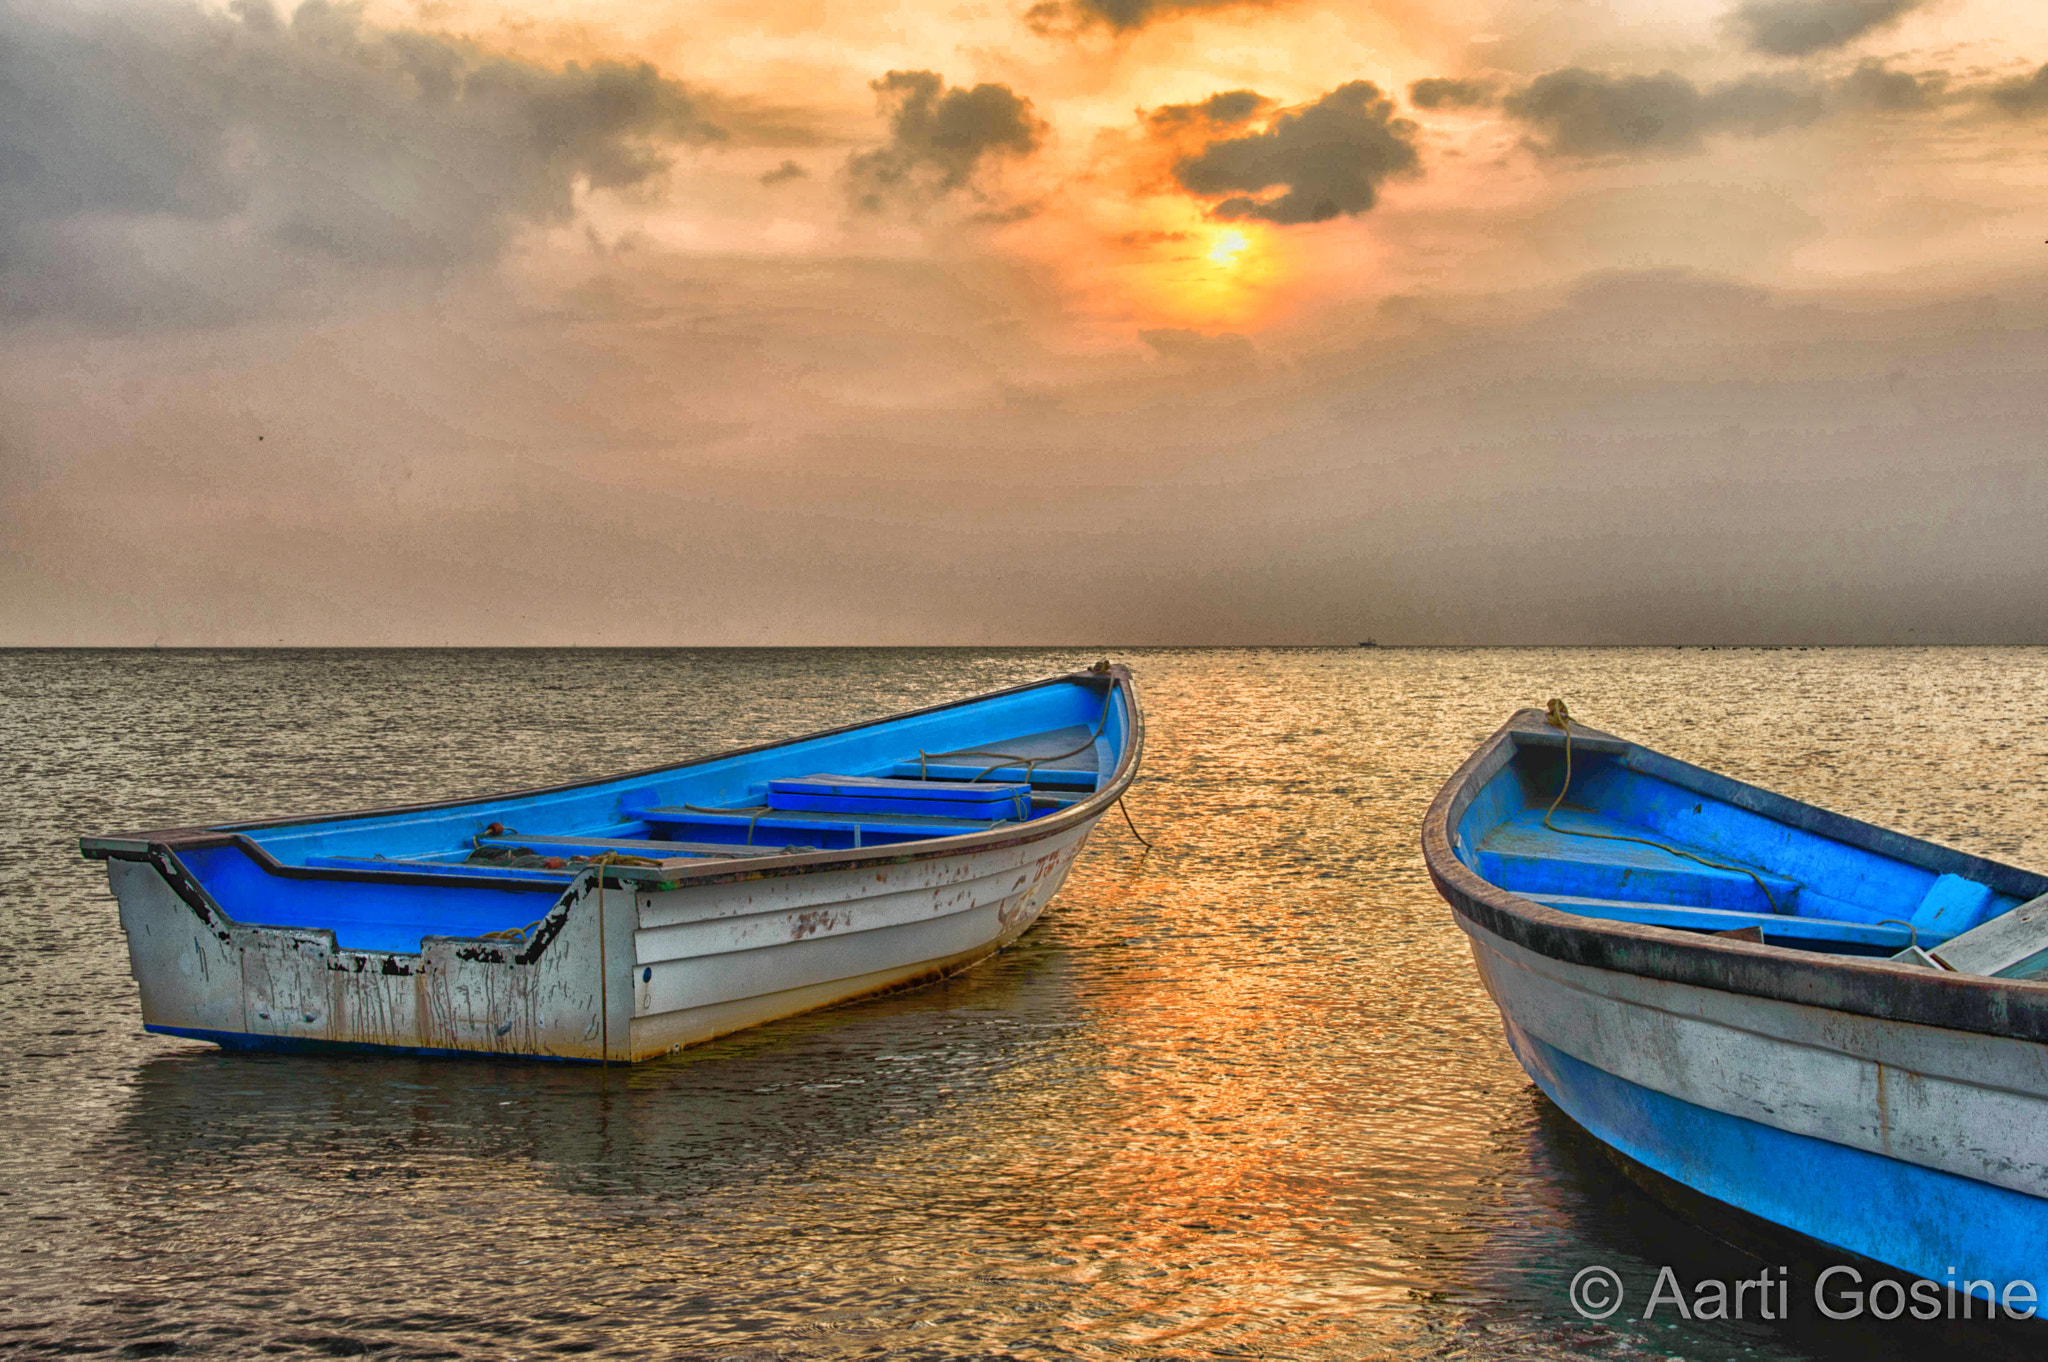 Nikon D3200 sample photo. Boats at sunset photography